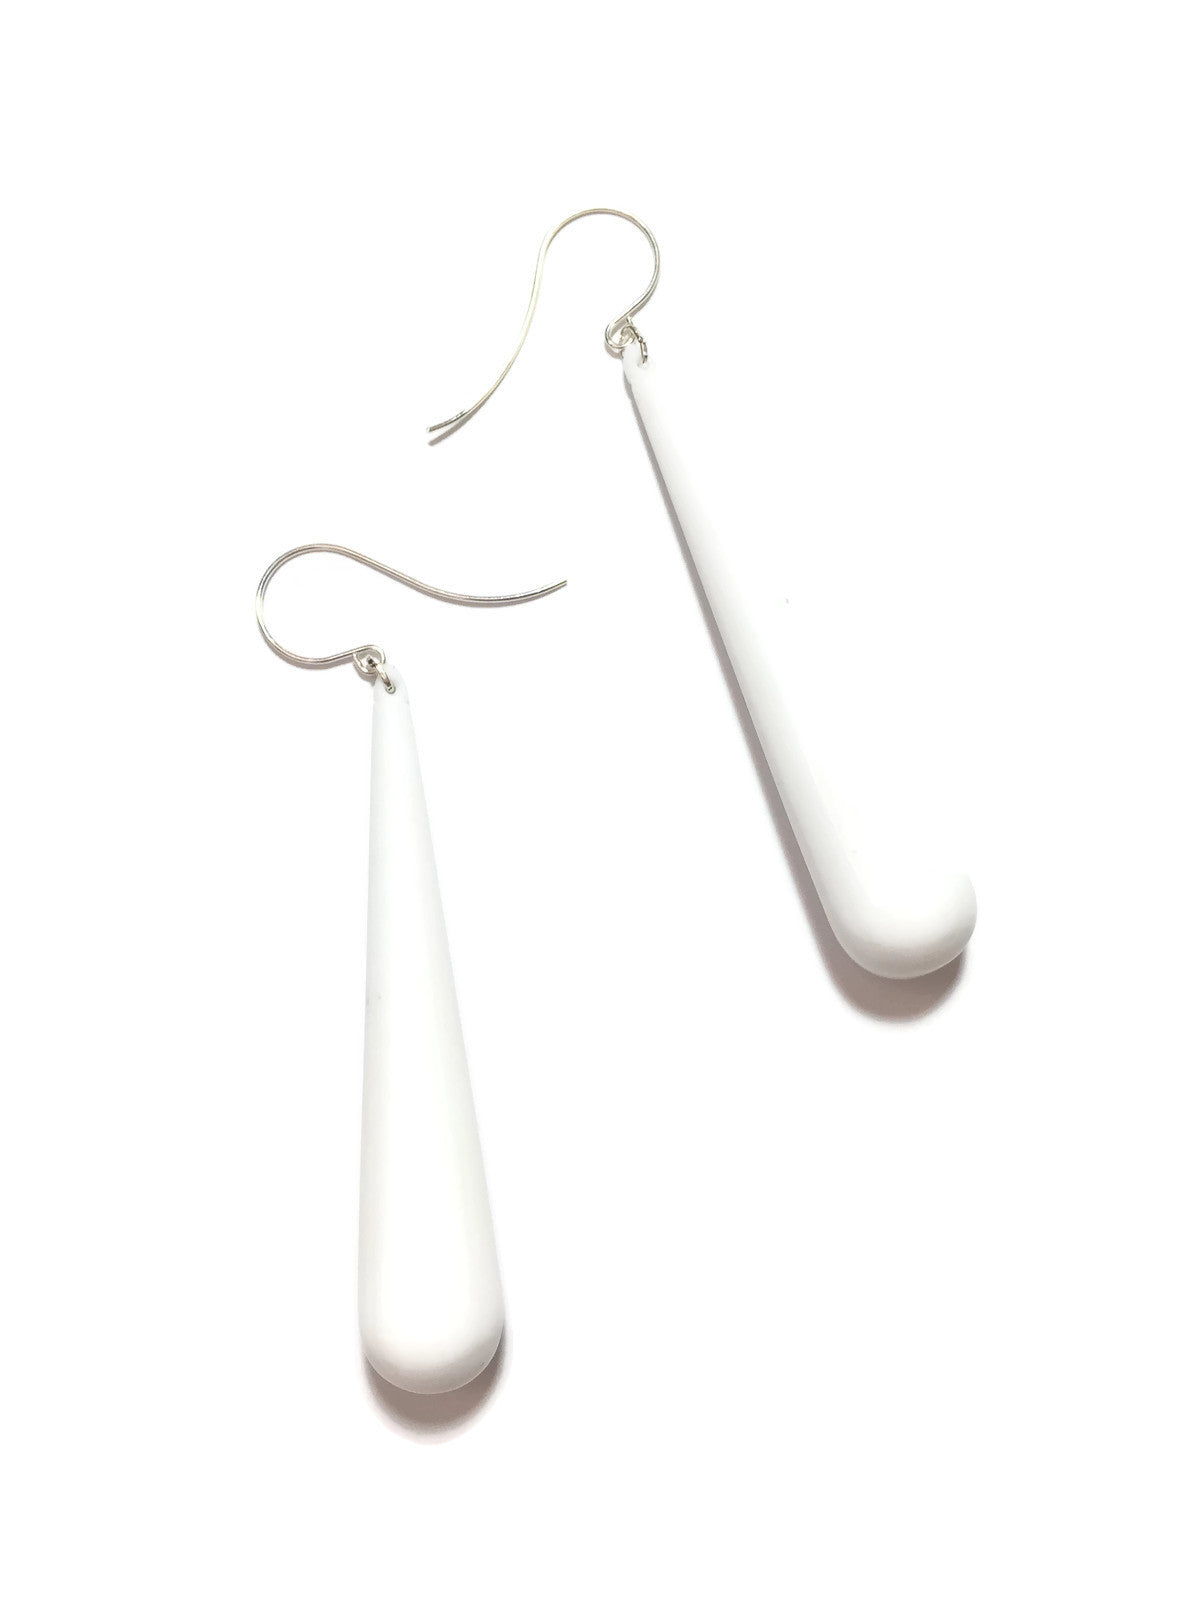 bright white earrings